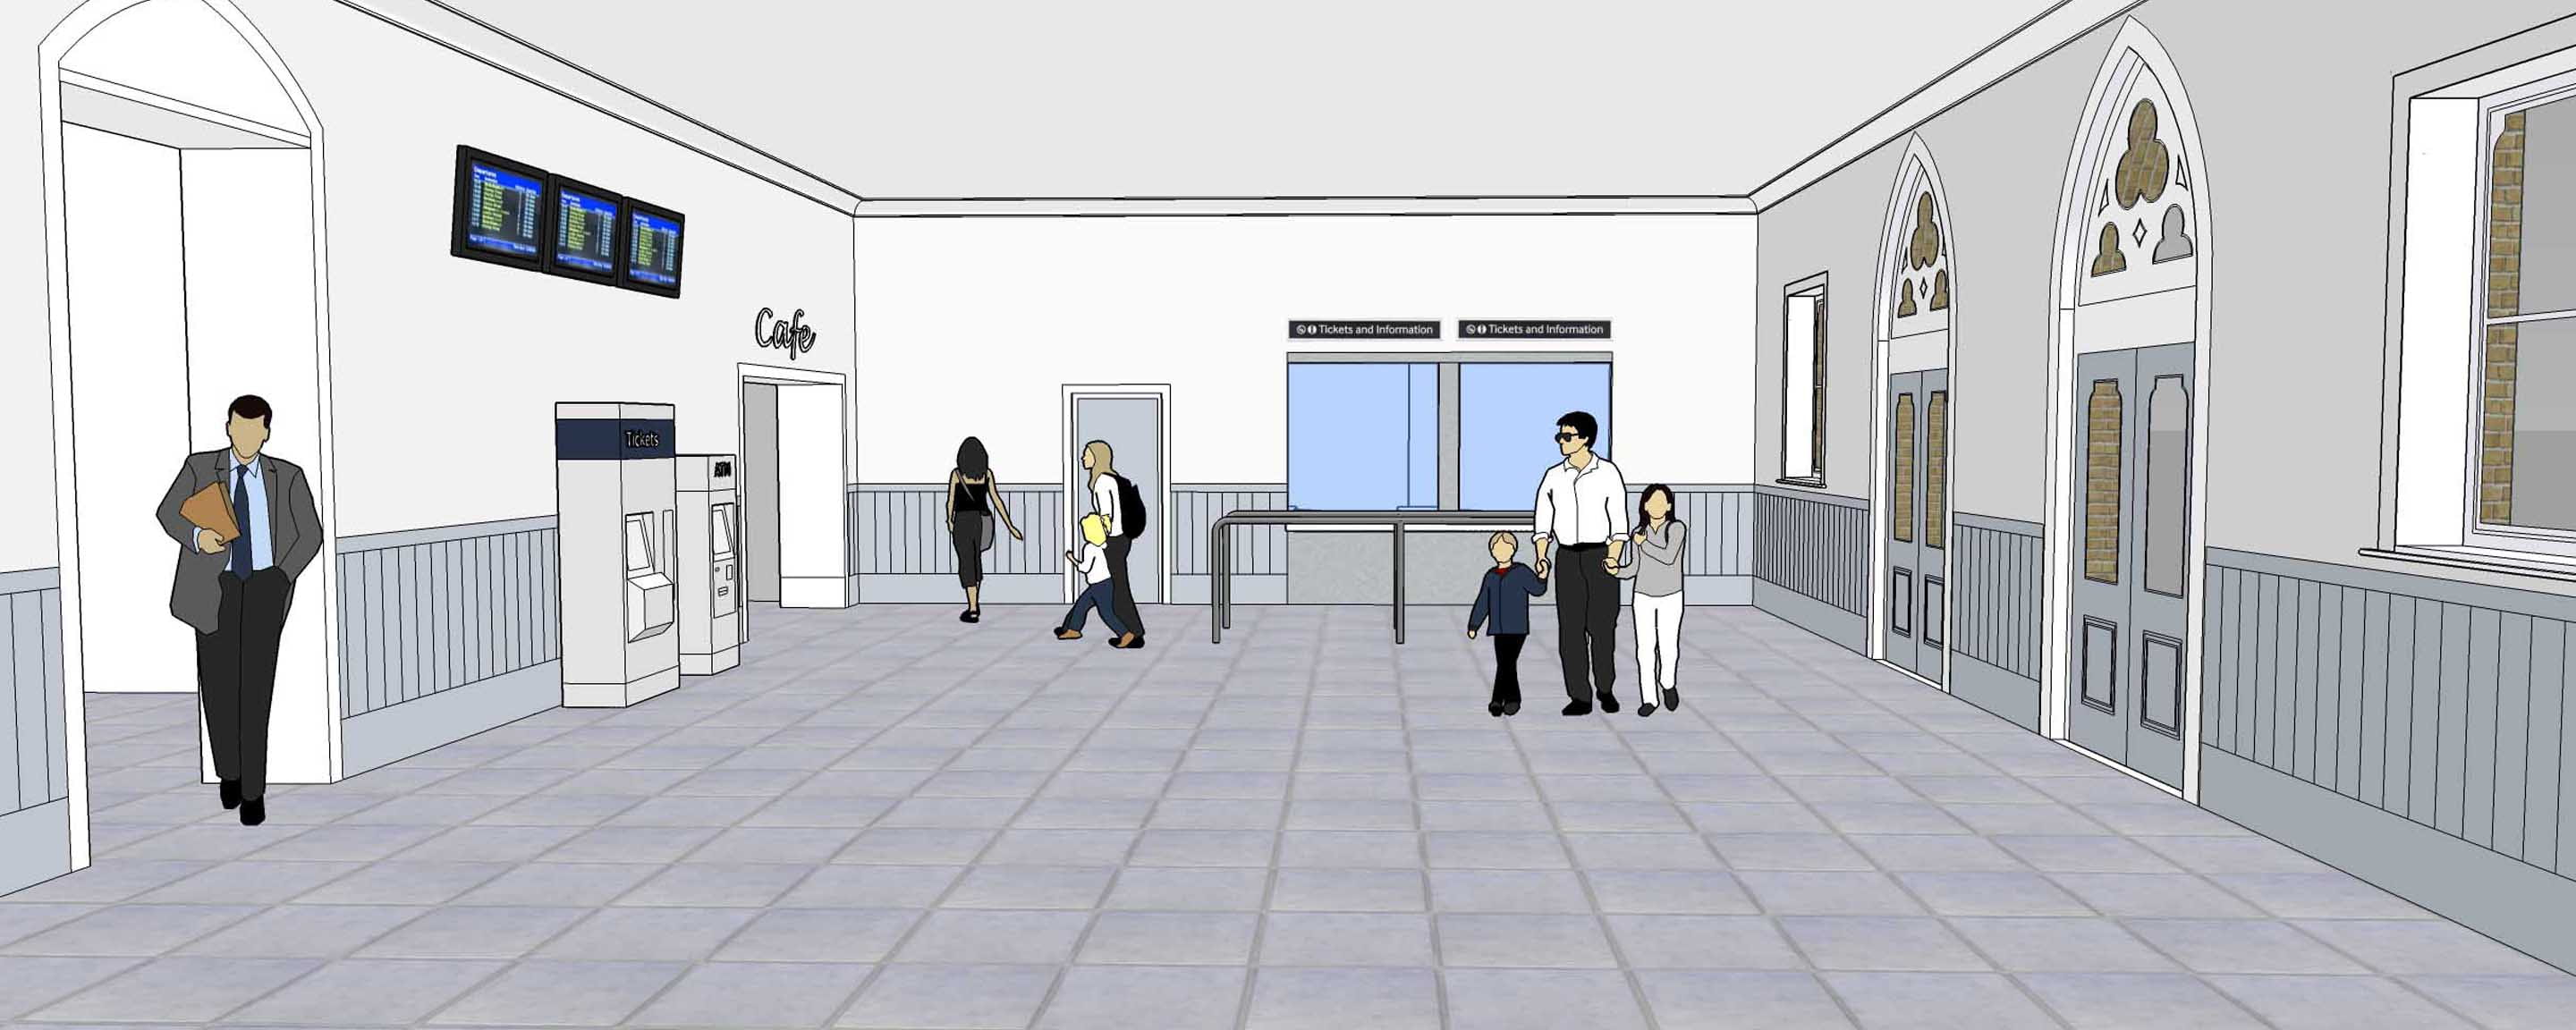 Herne Hill station architectural design